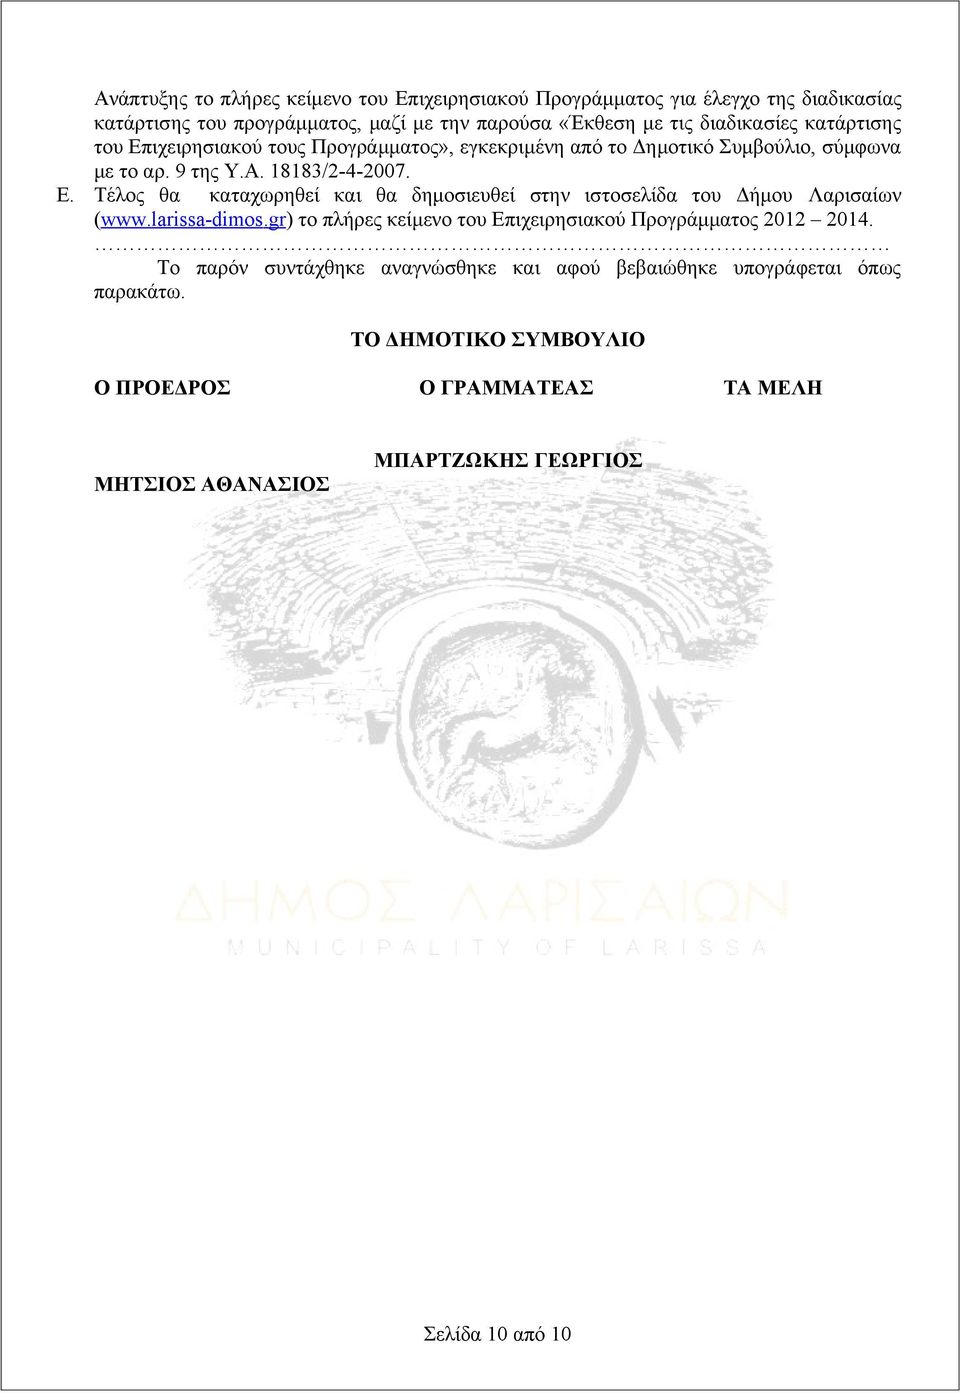 larissa-dims.gr) το πλήρες κείμενο του Επιχειρησιακού Προγράμματος 2012 2014. Το παρόν συντάχθηκε αναγνώσθηκε και αφού βεβαιώθηκε υπογράφεται όπως παρακάτω.